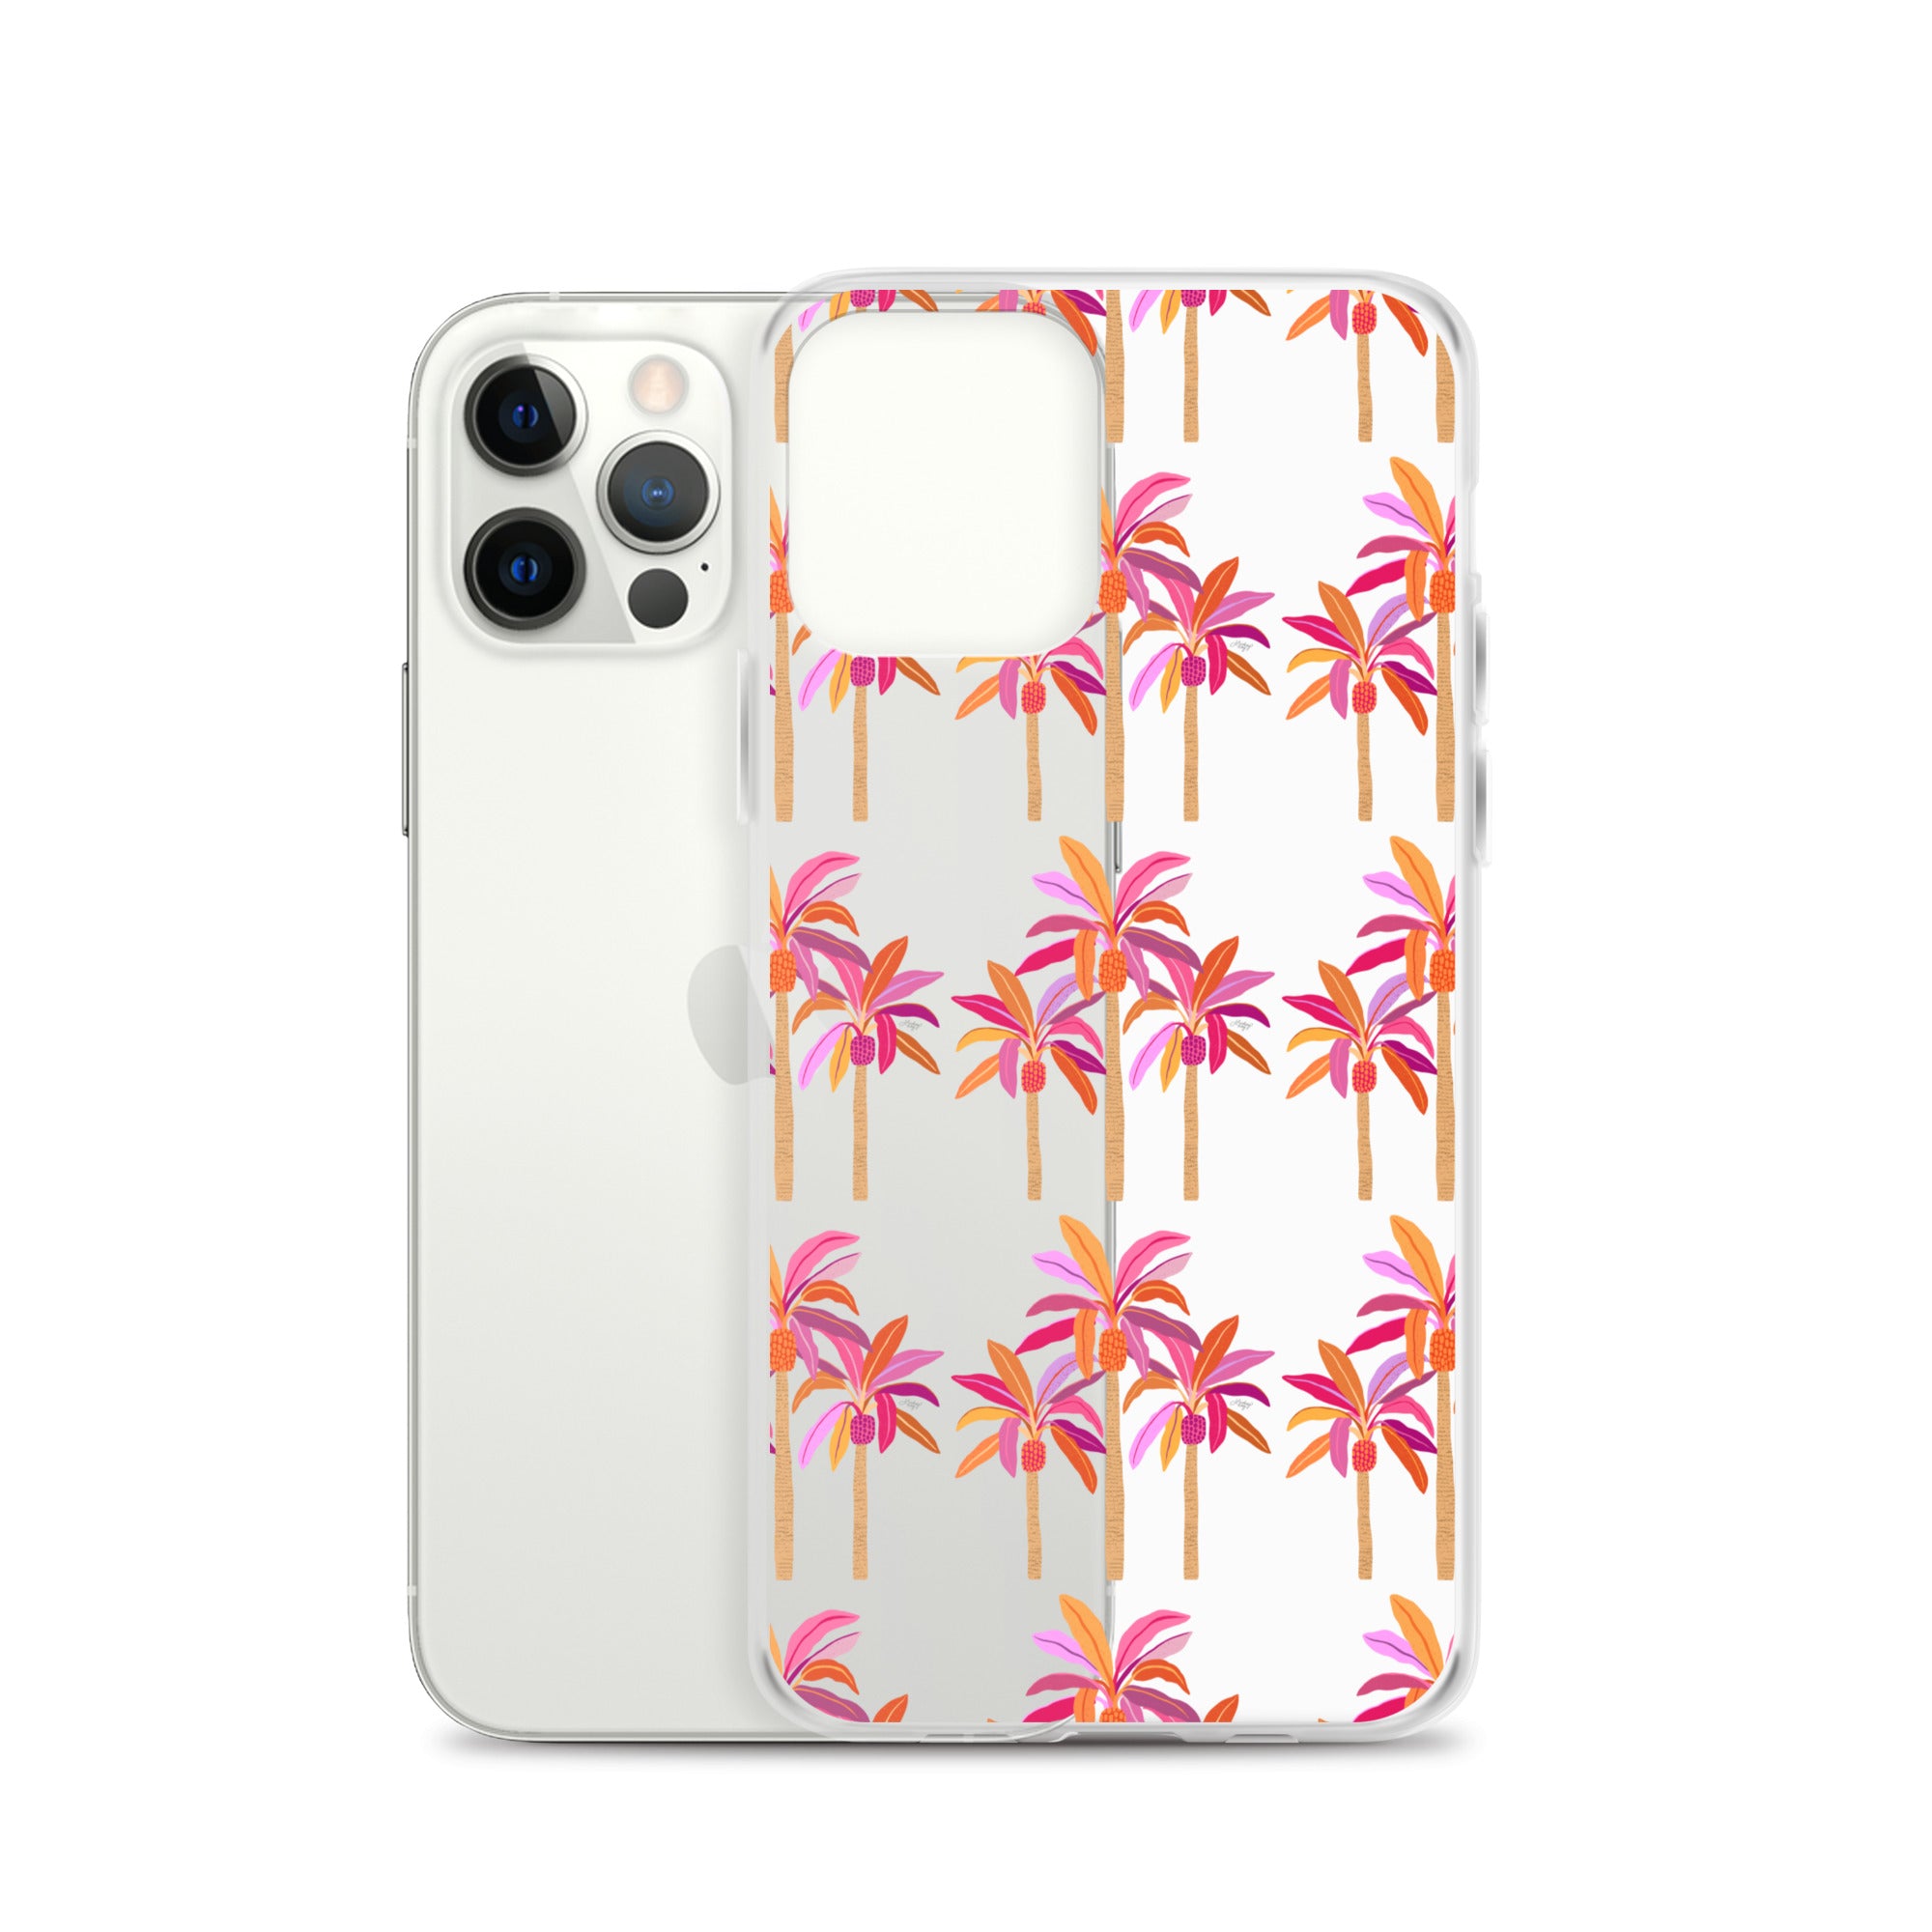 Ilustración de palmeras (paleta cálida) - Funda transparente para iPhone®